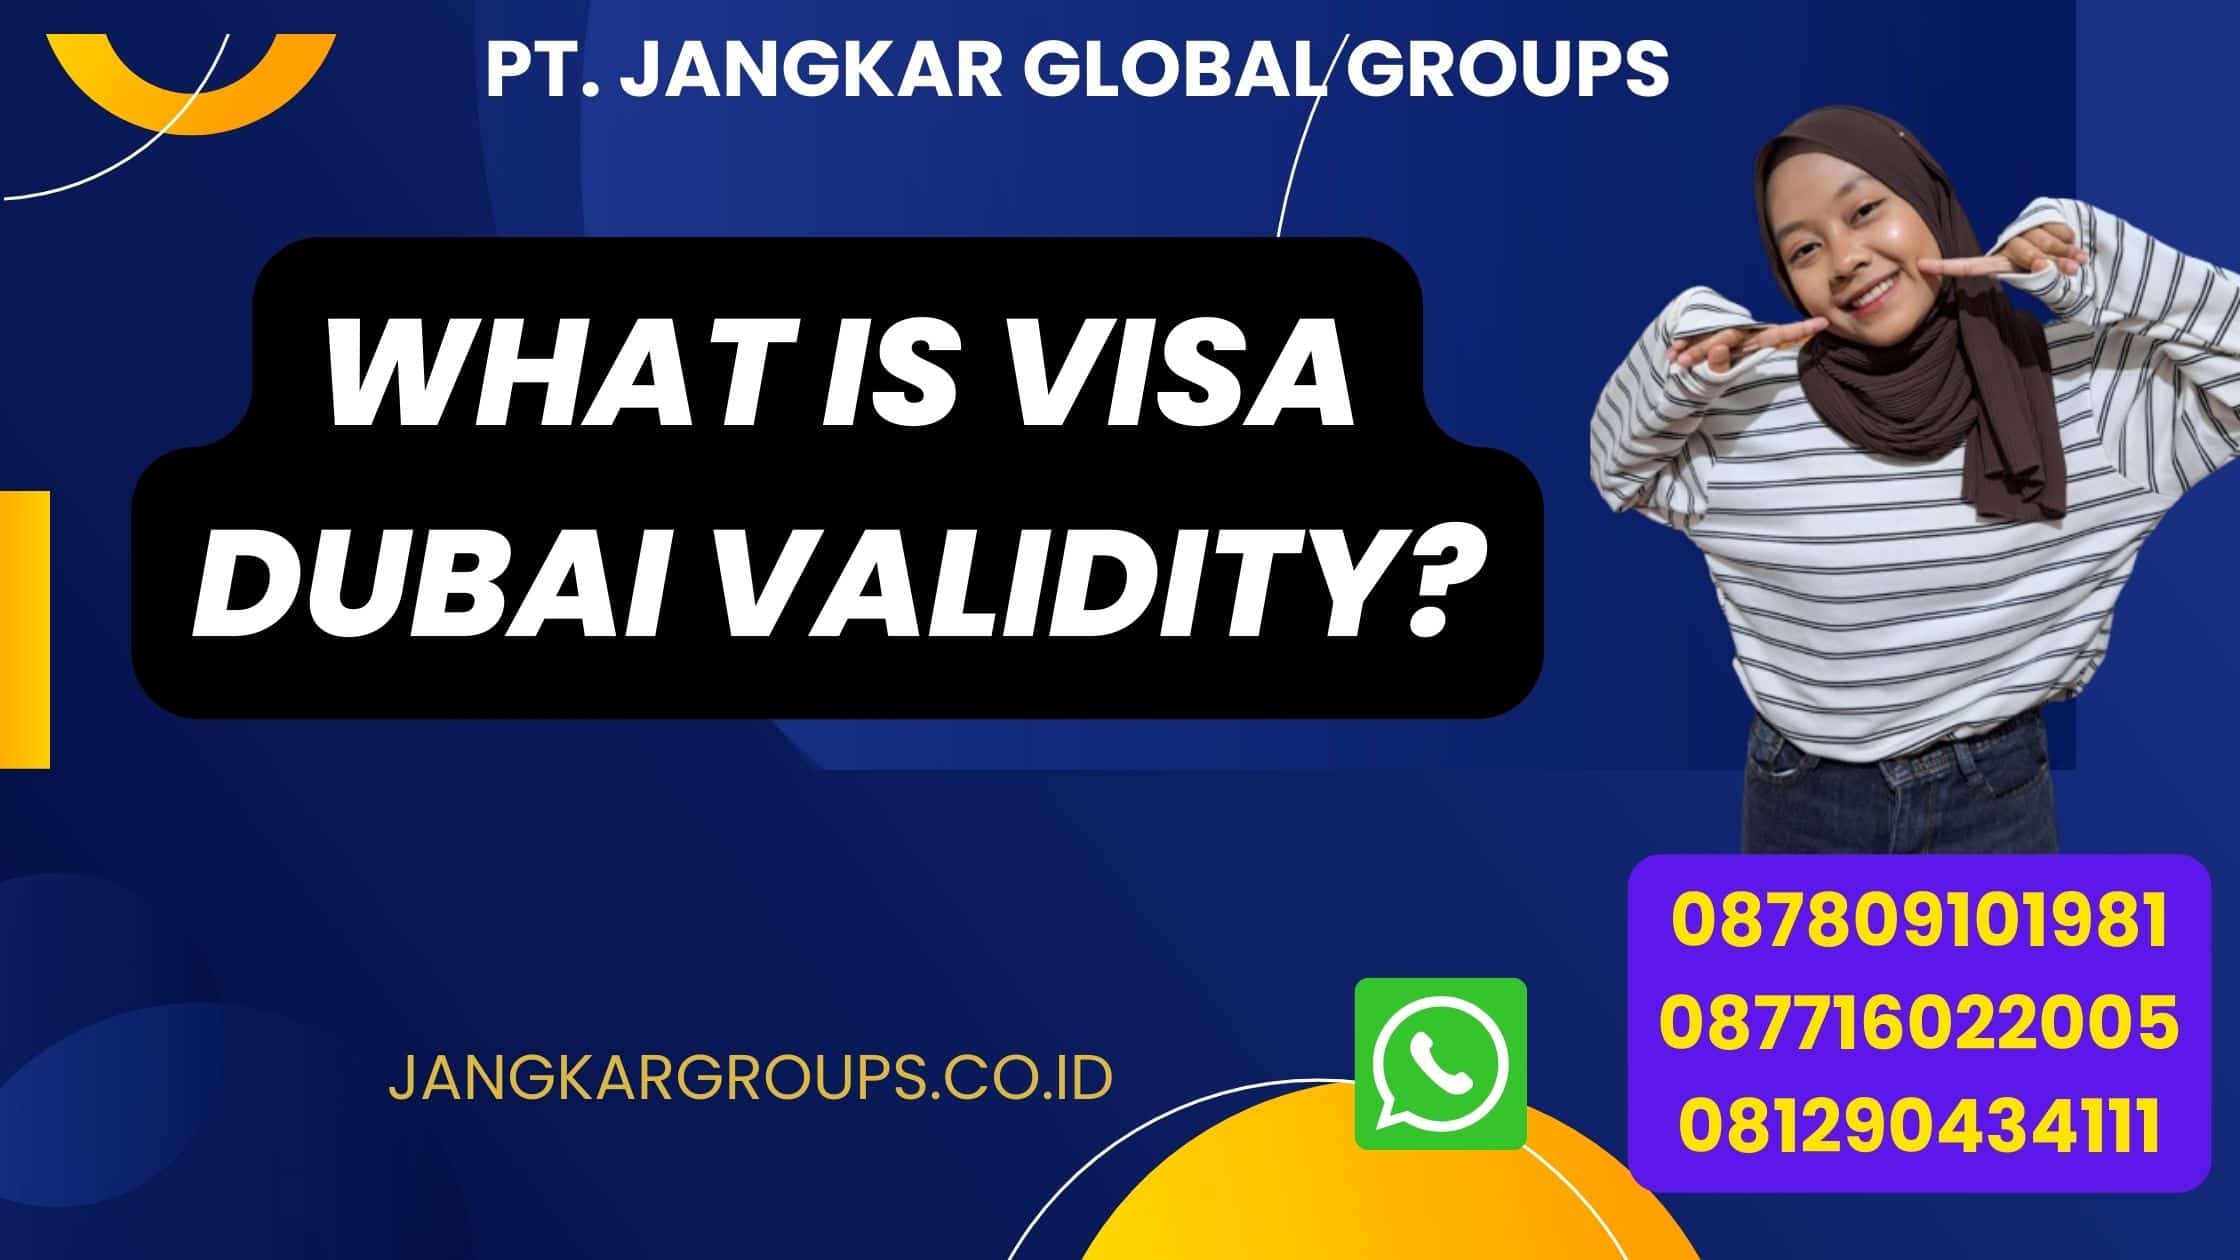 What is Visa Dubai Validity?